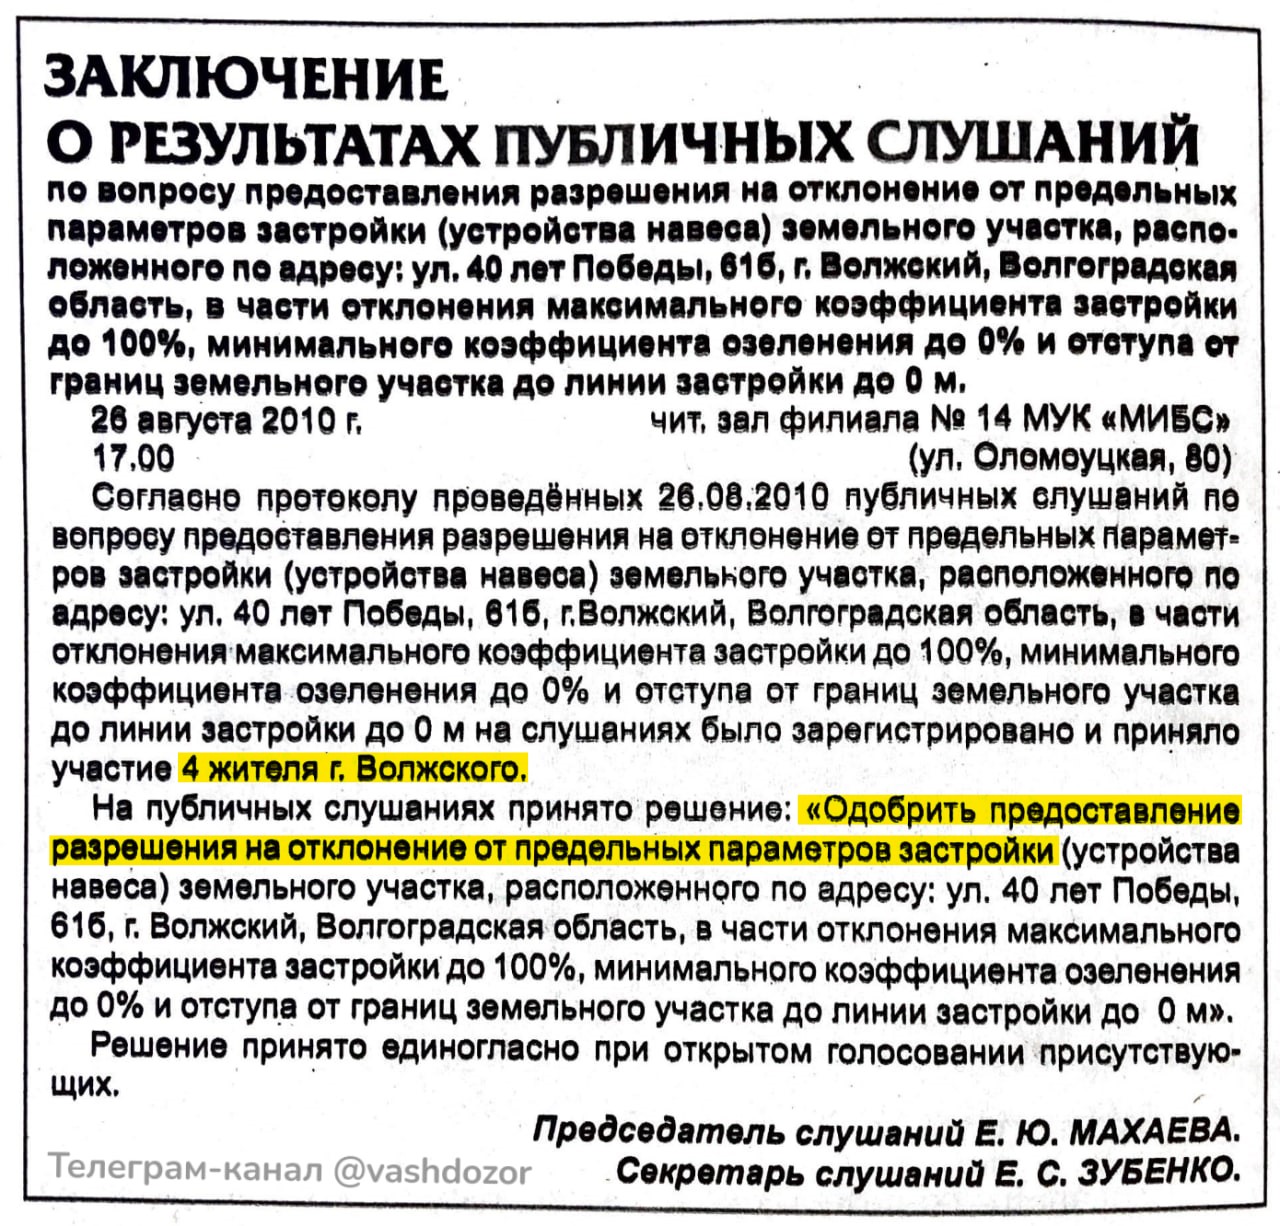 Публикация в газете «Волжская правда» от 2 сентября 2010 года об итогах общественных слушаний, на которых было принято решение разрешить строительство 